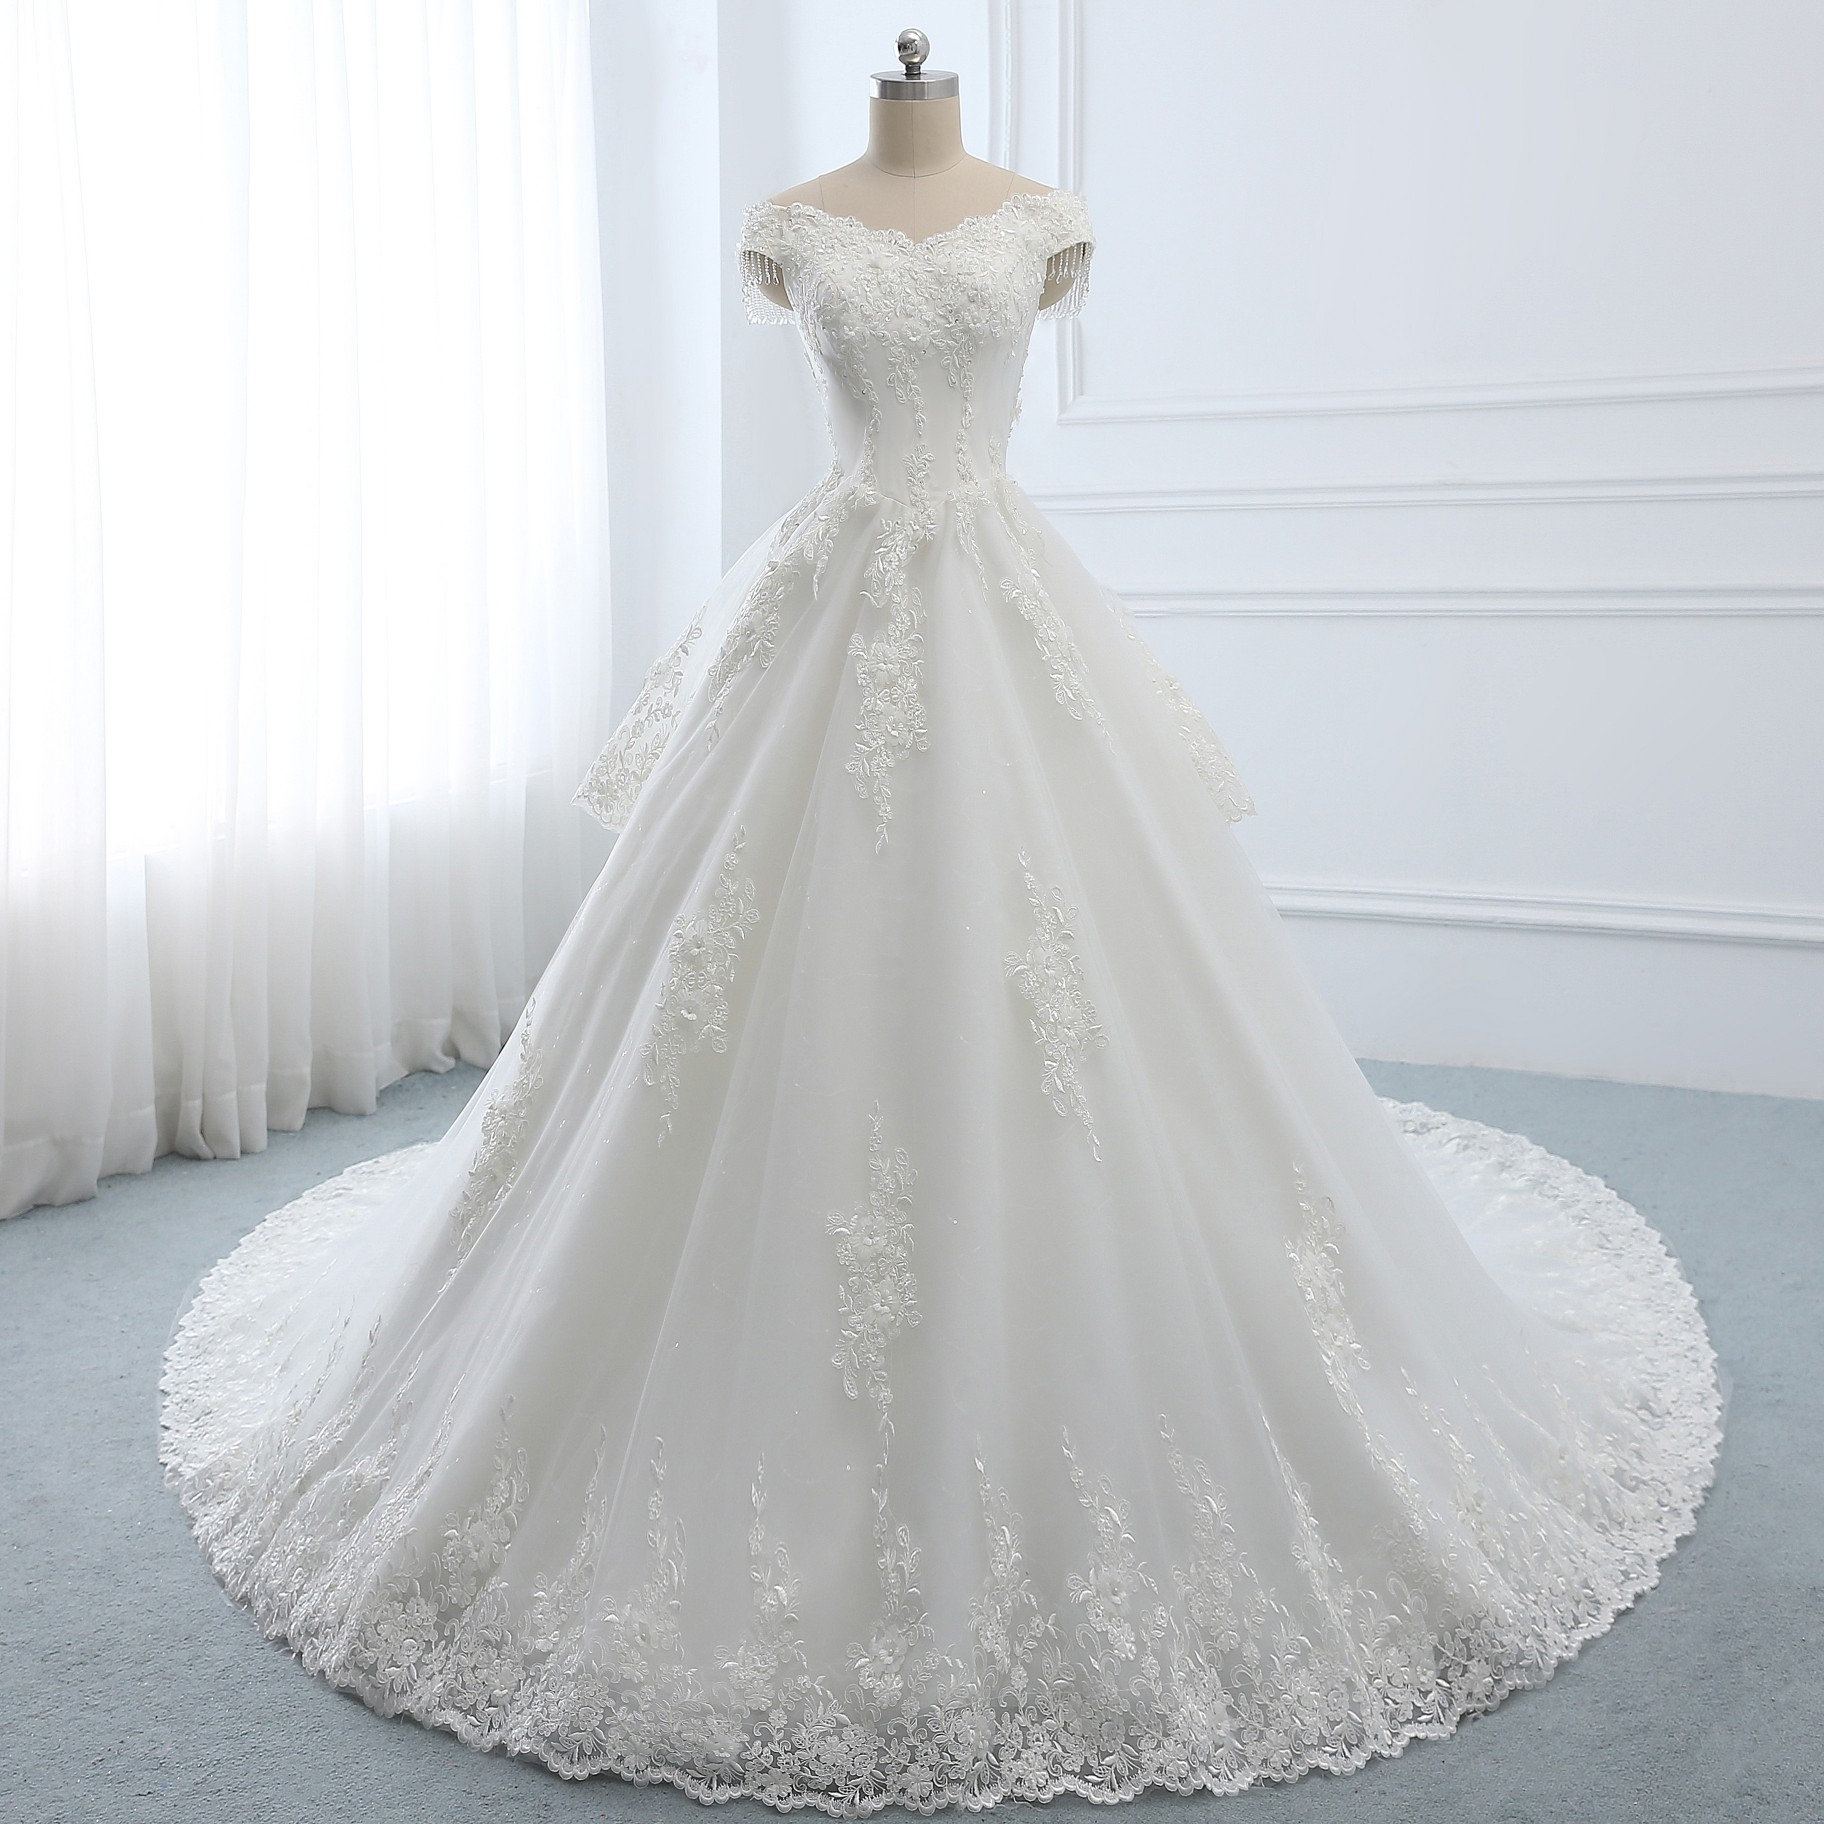 2019 Aline Princess Wedding Dress Unique White Lace Applique | Etsy